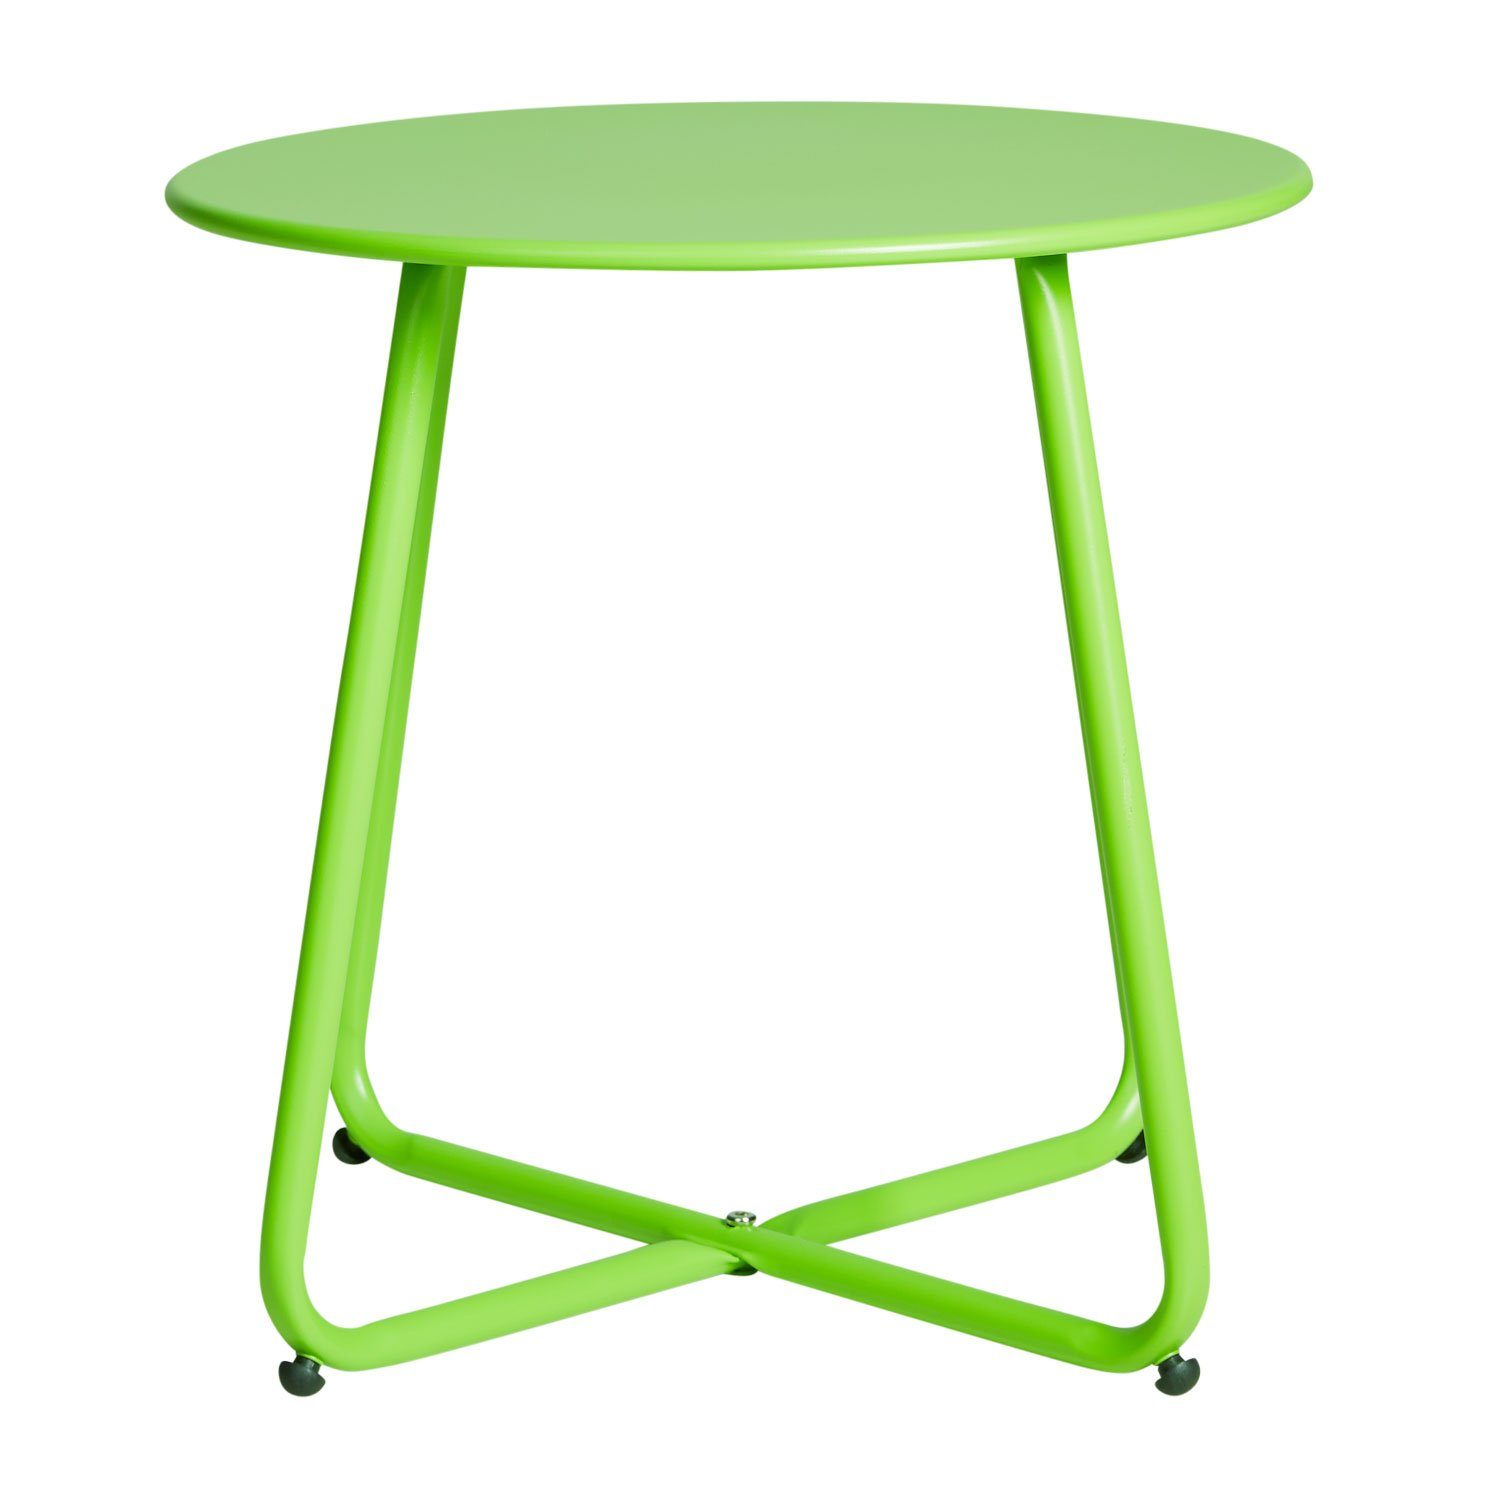 Metall Tisch grün | grün Kaffeetisch Beistelltisch (kein Set) Rund Gartentisch Homestyle4u | grün